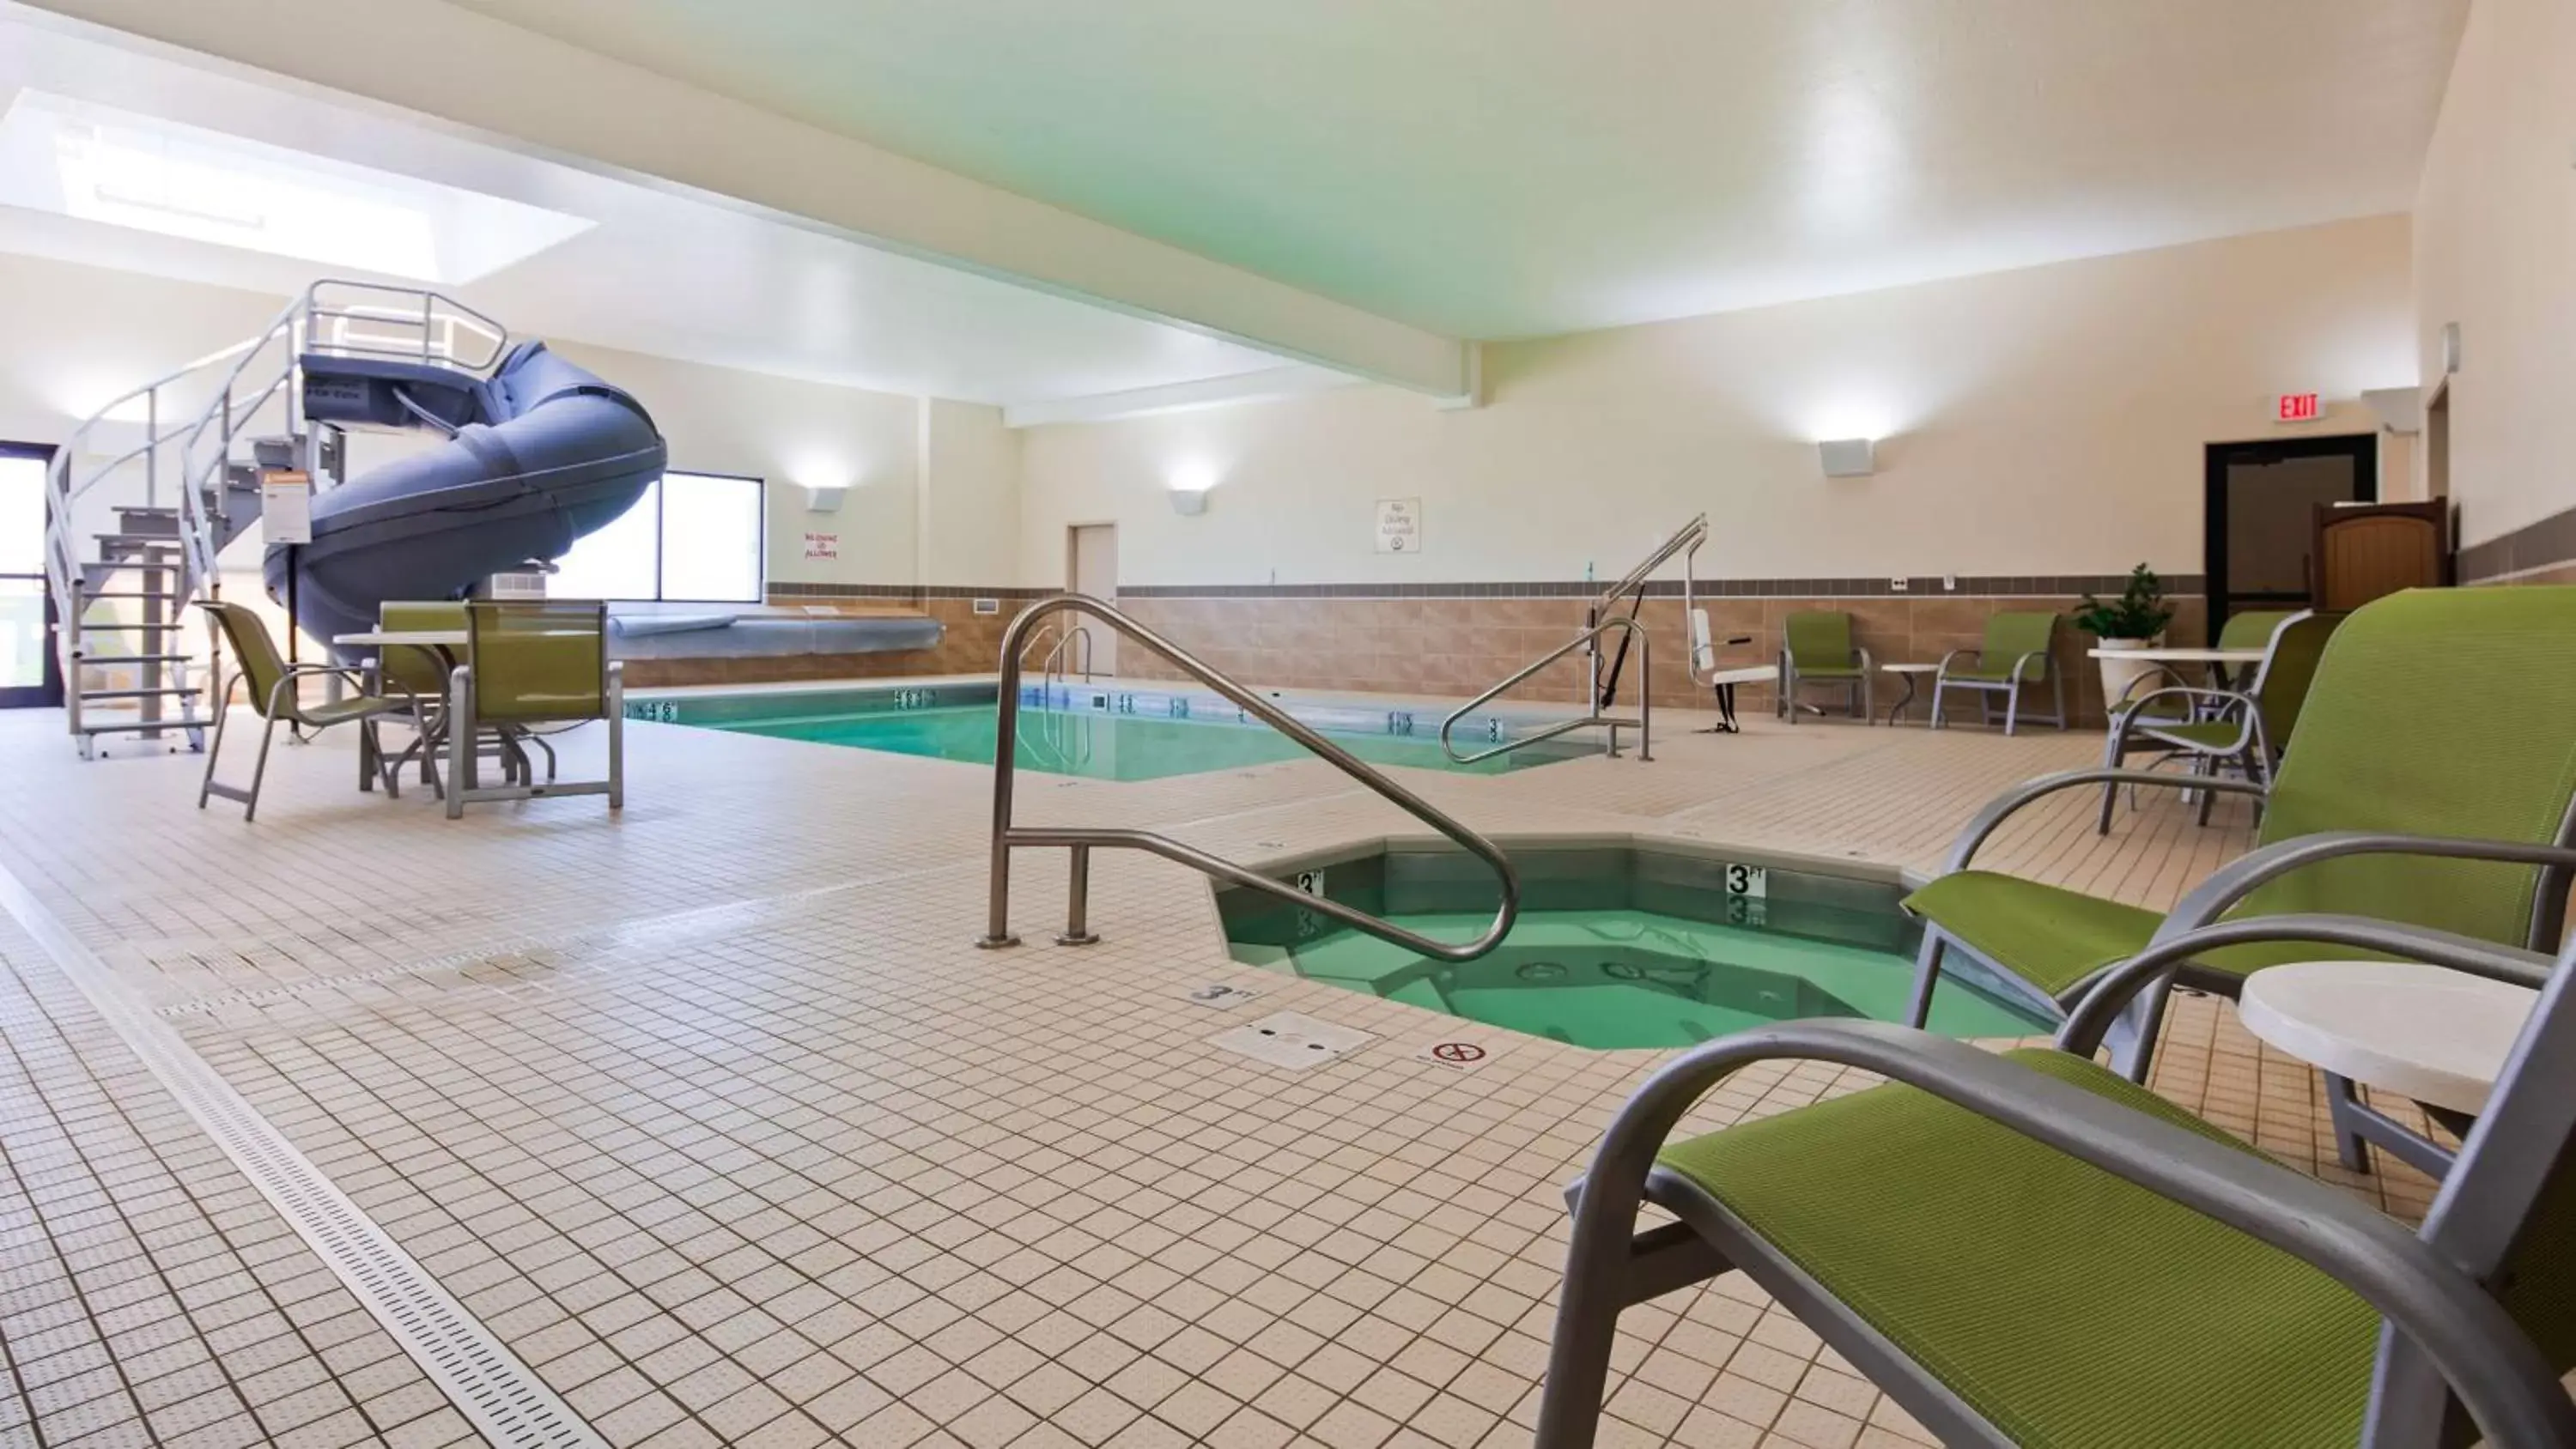 On site, Swimming Pool in Best Western Plus Havre Inn & Suites